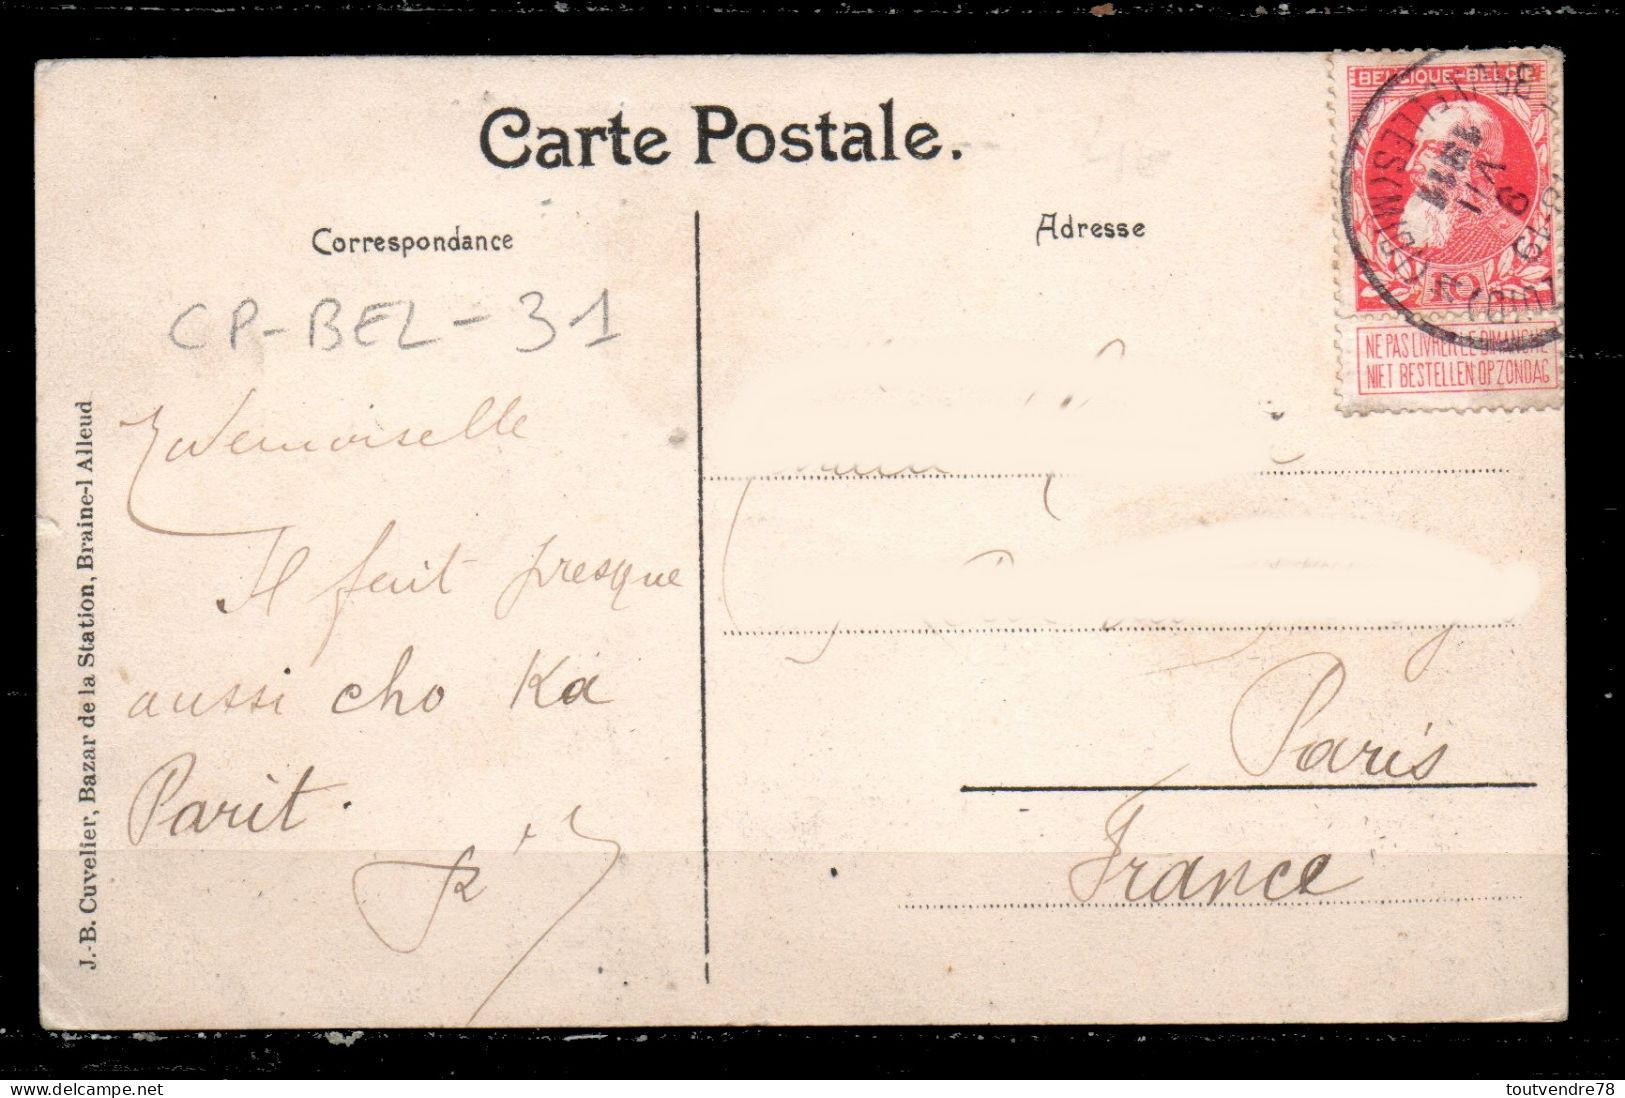 CP-BEL-31 : Belgique > Waterloo Goumont Chapelle Et Vieux Puits / NB 1911 - Waterloo